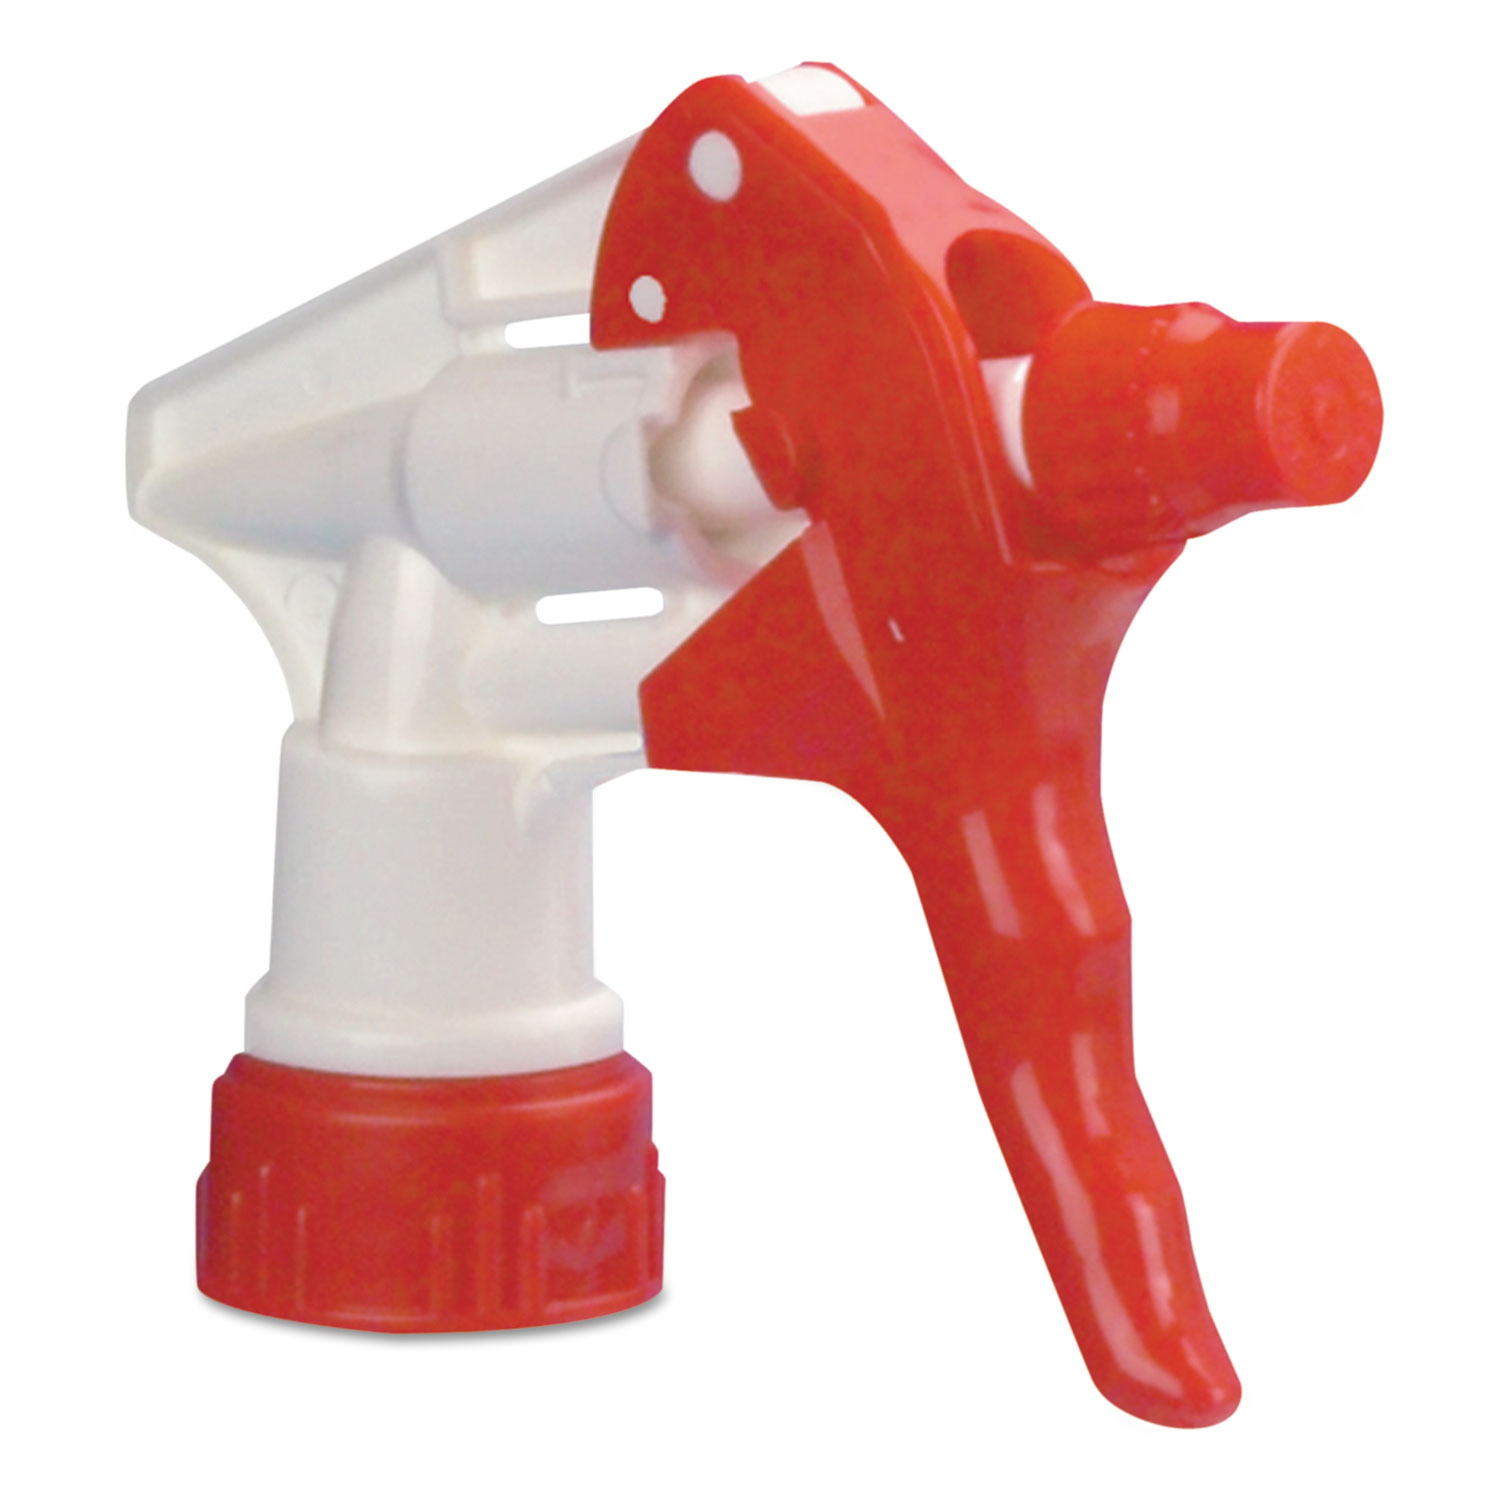 Trigger Sprayer 250 f/24 oz Bottles, Red/White, 8Tube, 24/Carton